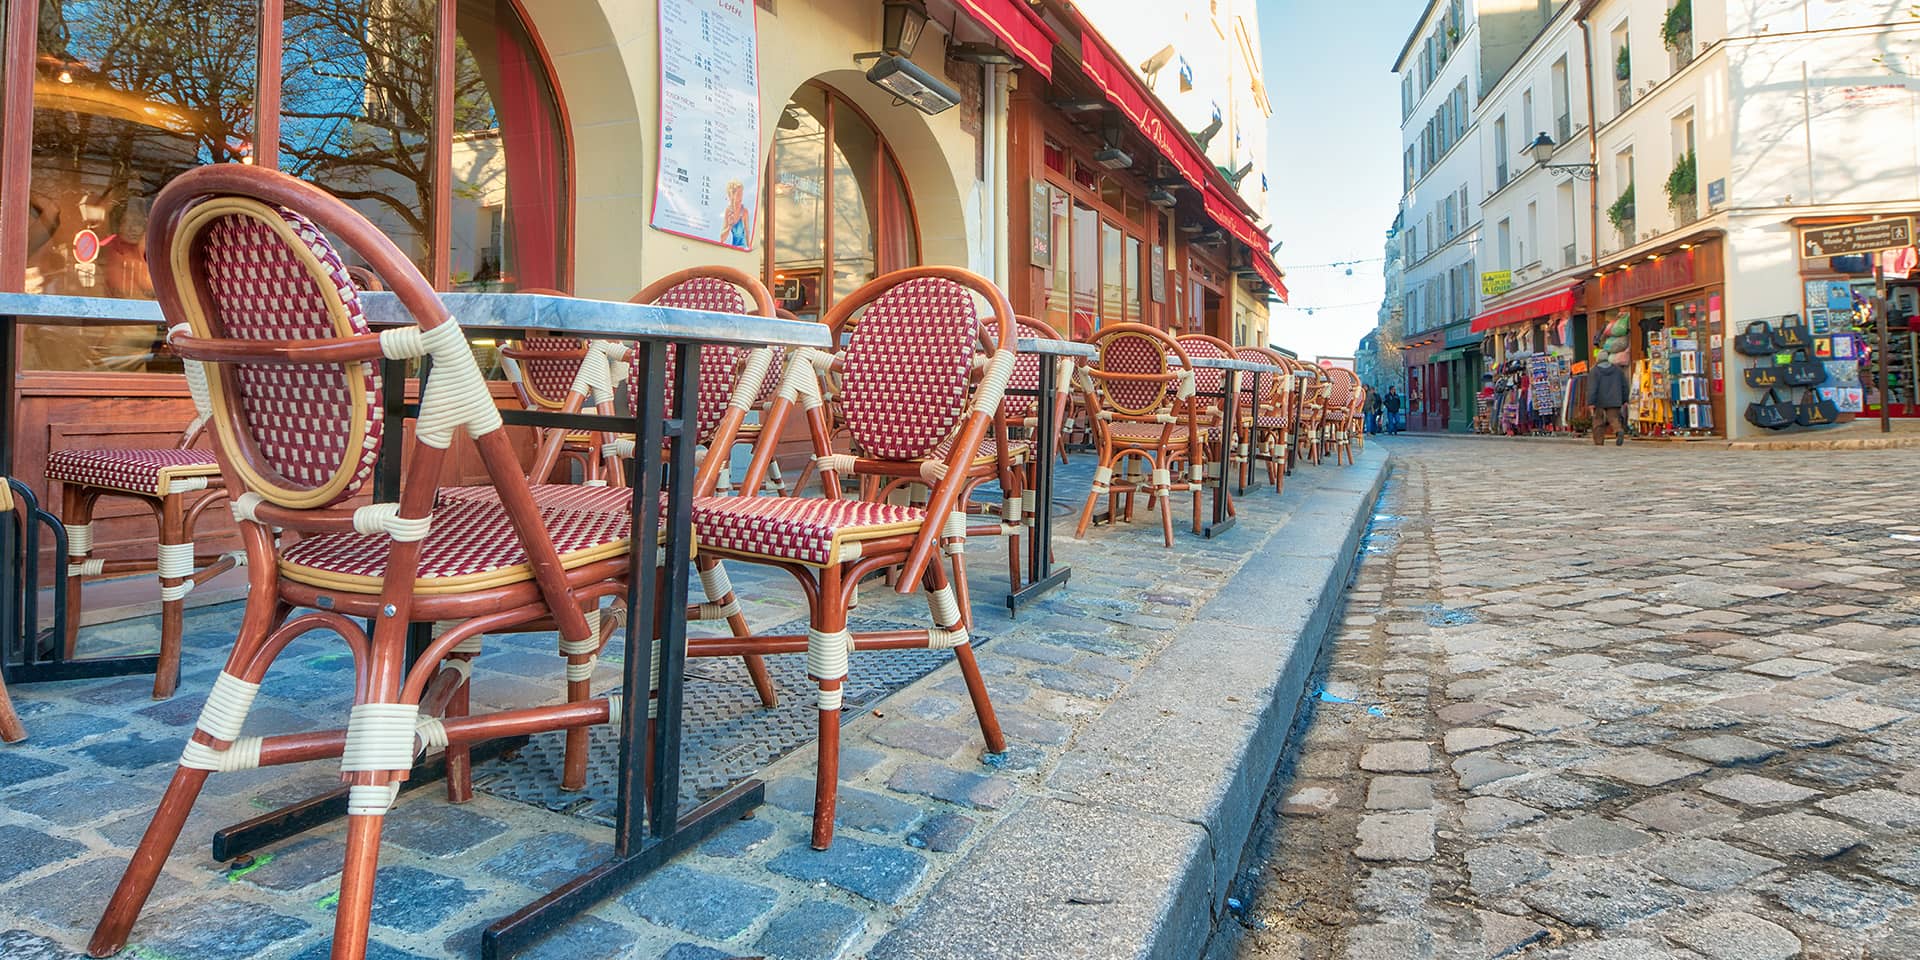 Billede fra fransk by og fransk café